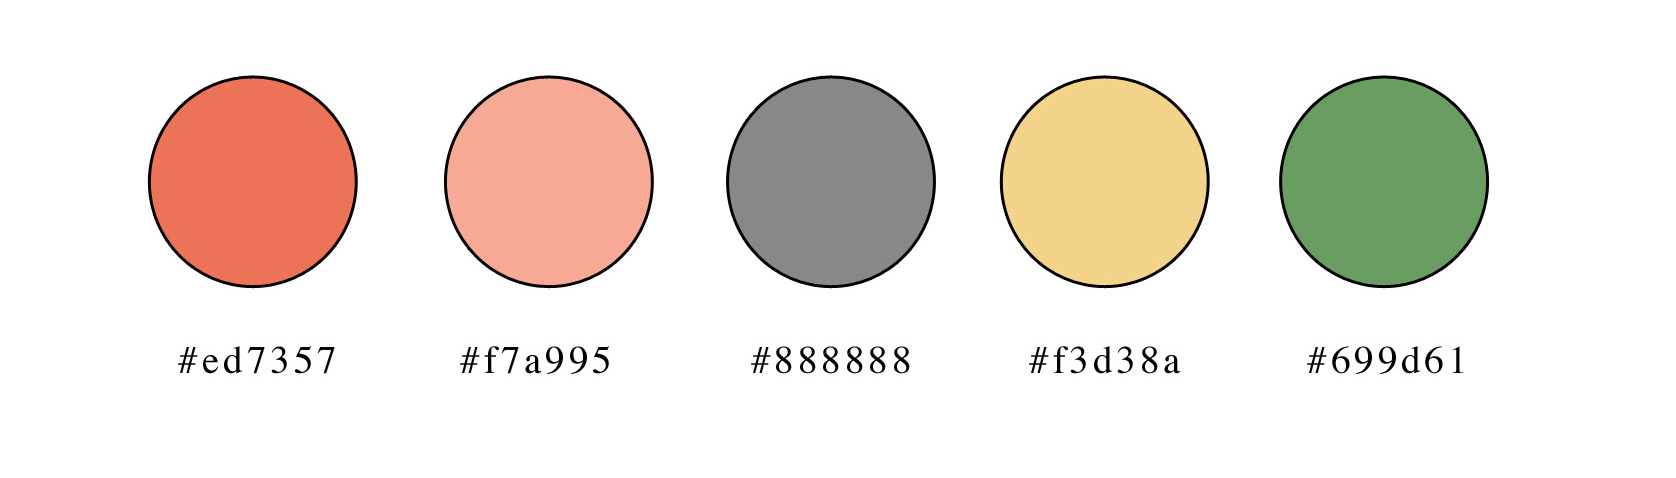 Hexidecimal color codes.